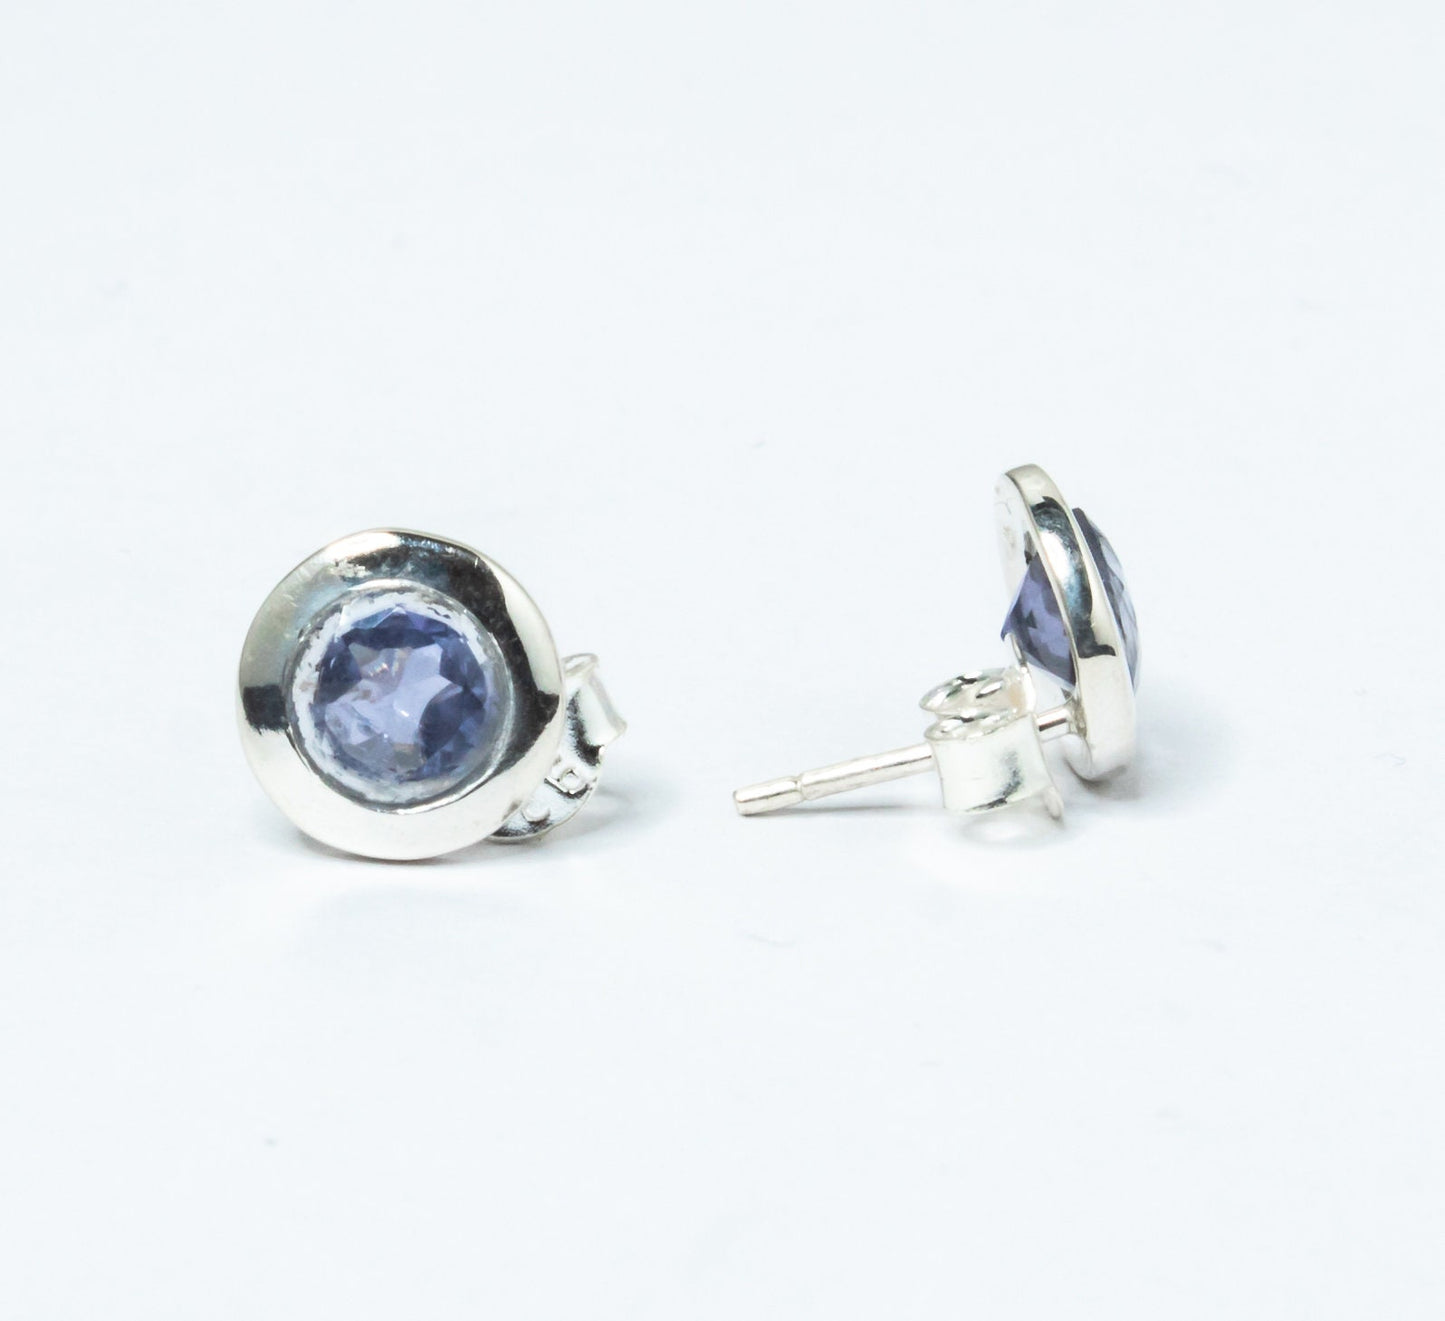 Genuine Iolite Round Cut Gems Solid 925 Sterling SILVER Round Stud Earrings, Sagittarius & Taurus Zodiac, September Birthstone, Australia, Zorbajewellers